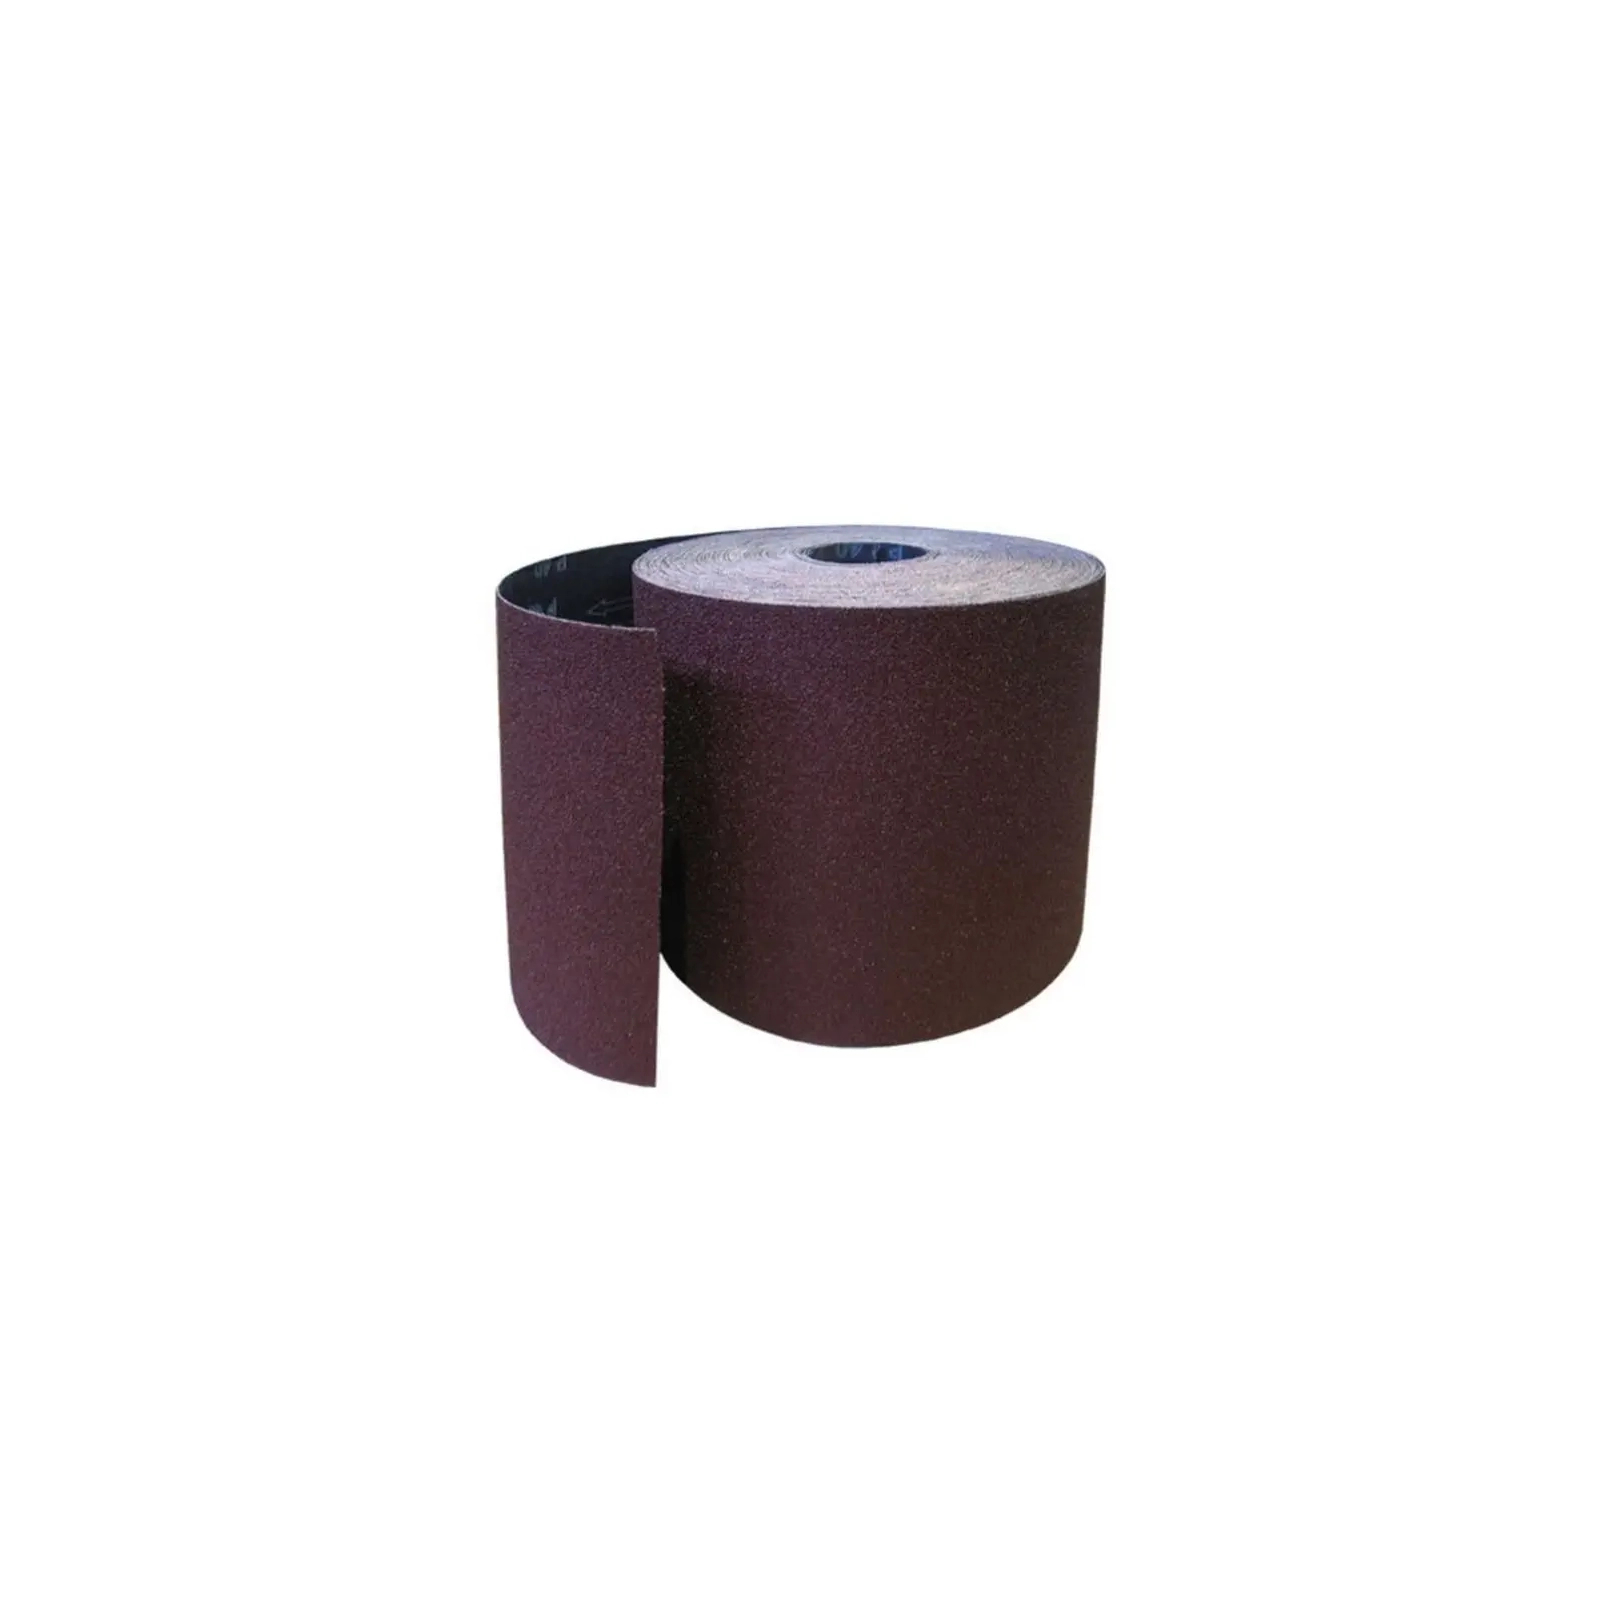 Наждачная бумага HAISSER бумажная основа – 115мм x 5м, зерно 240 (118539)